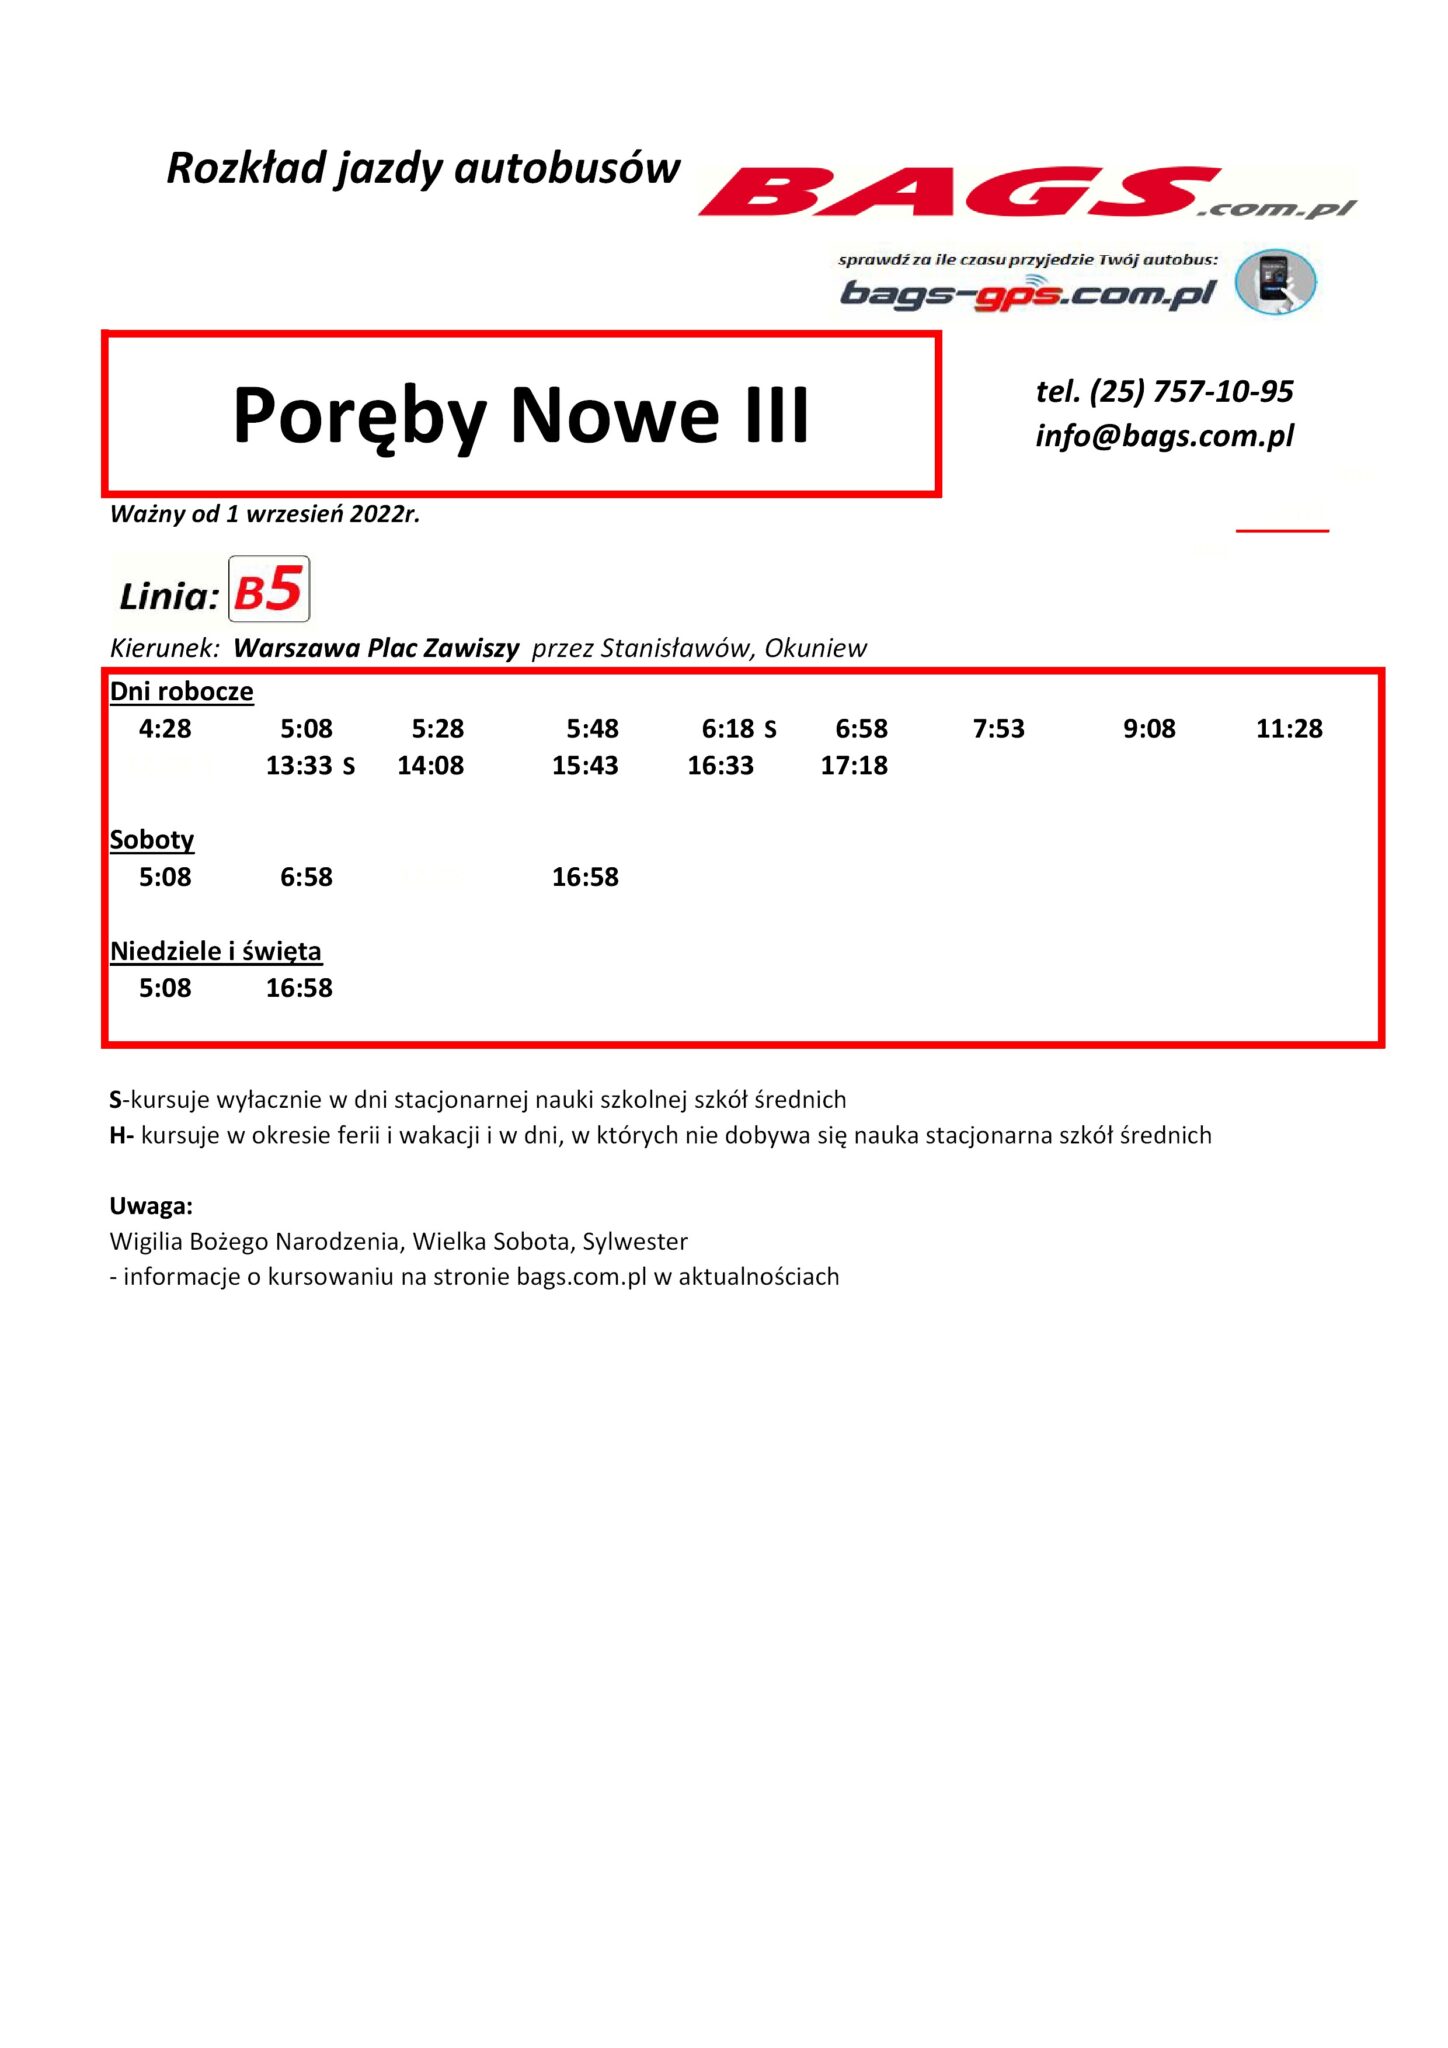 Poreby-Nowe-III-1-1-1448x2048